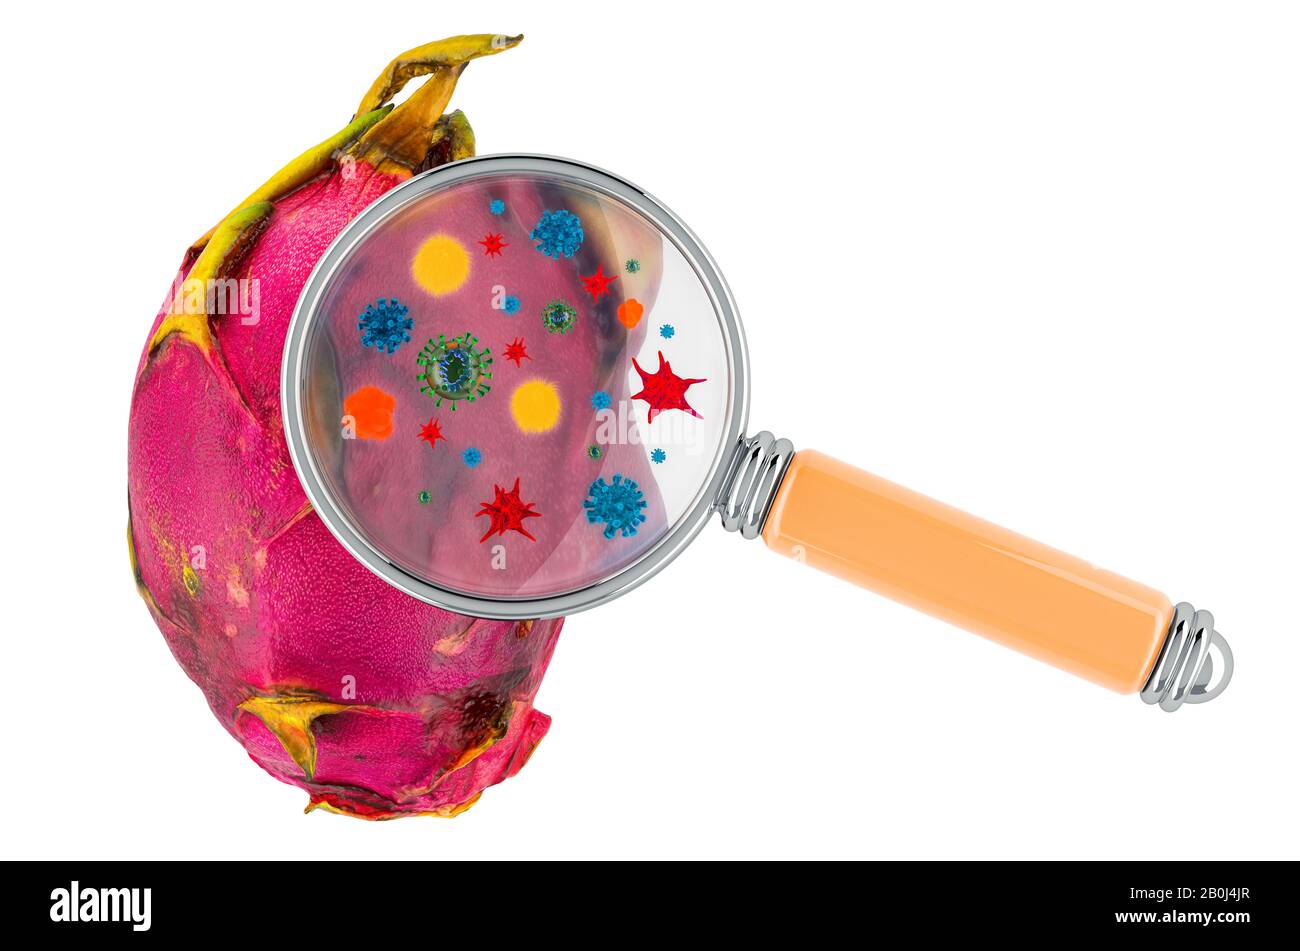 Pitaya avec germes, microbes ou virus sous loupe, rendu tridimensionnel isolé sur fond blanc Banque D'Images